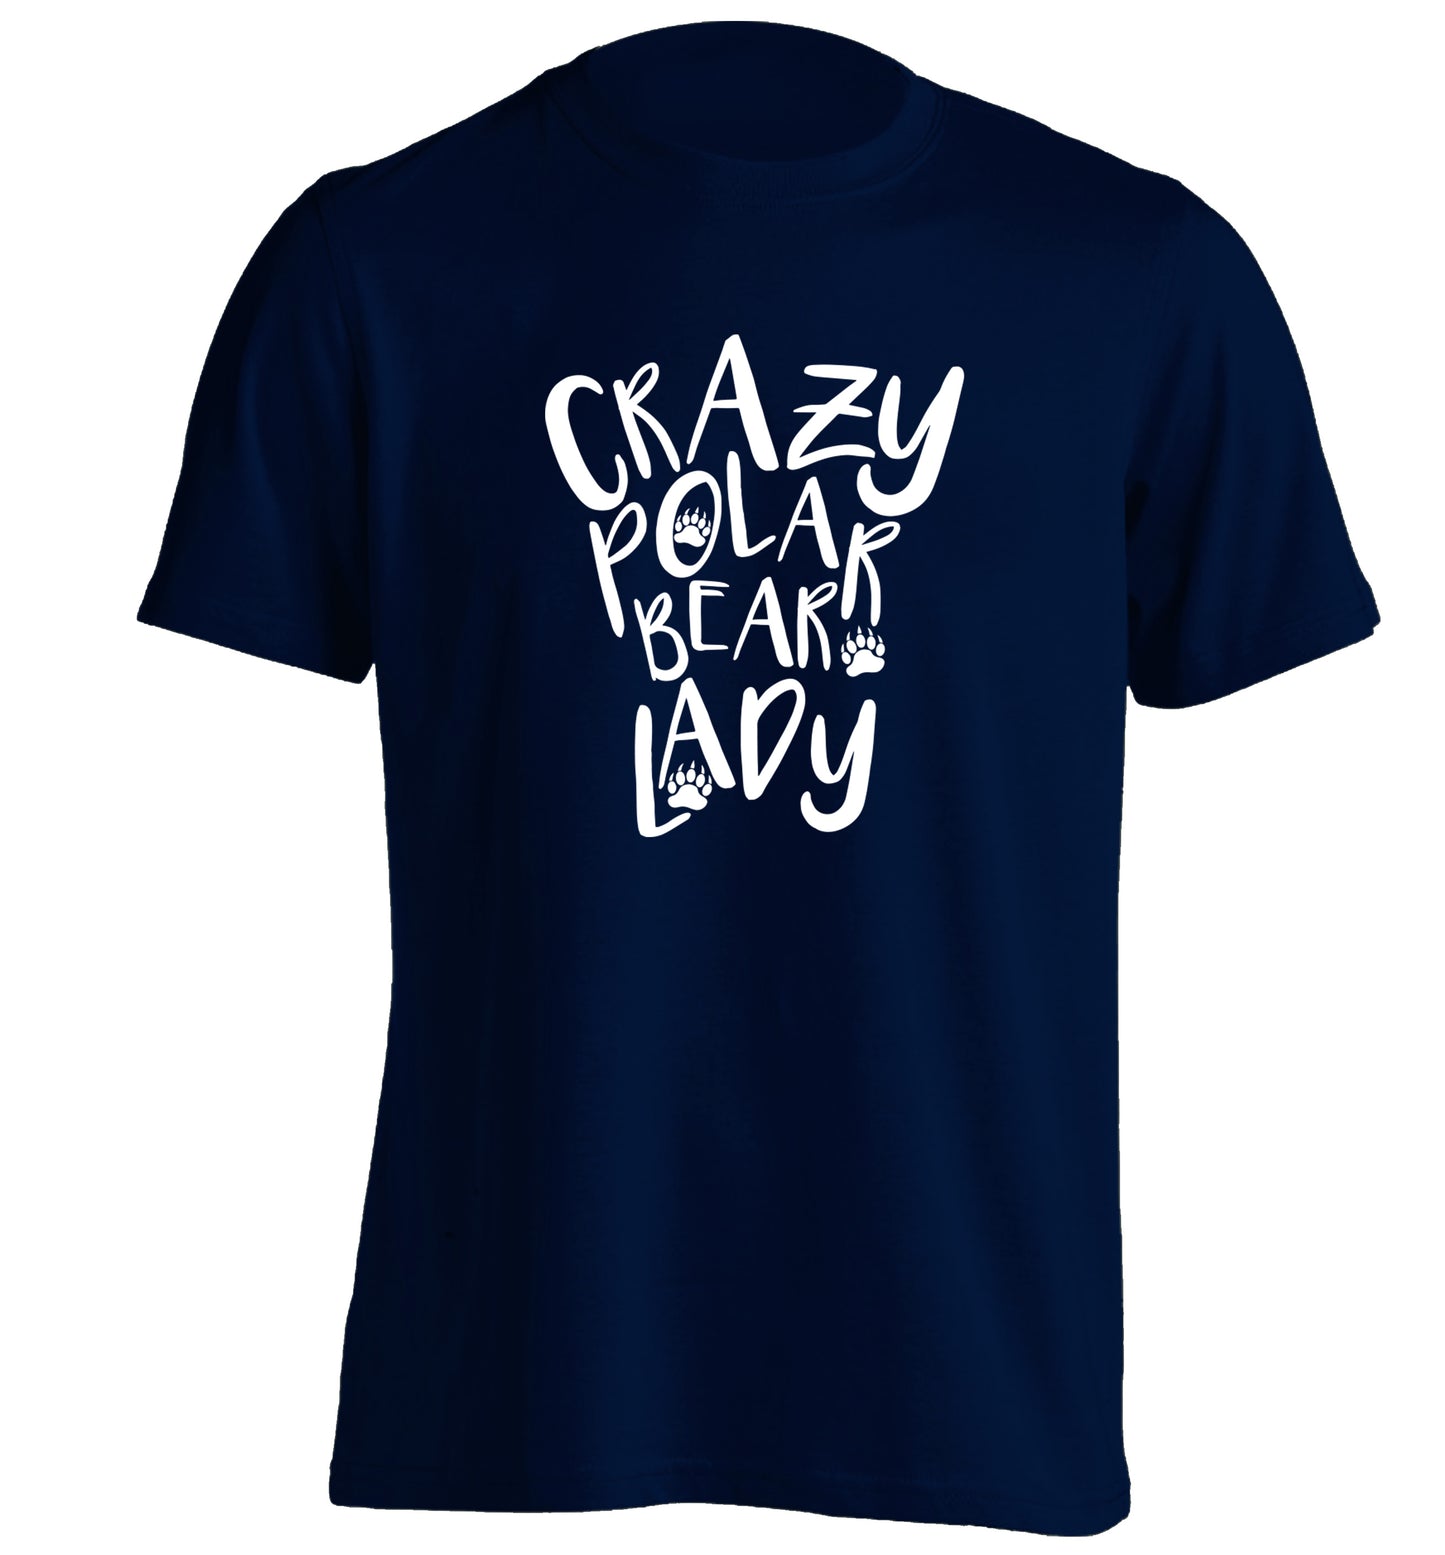 Crazy polar bear lady adults unisex navy Tshirt 2XL